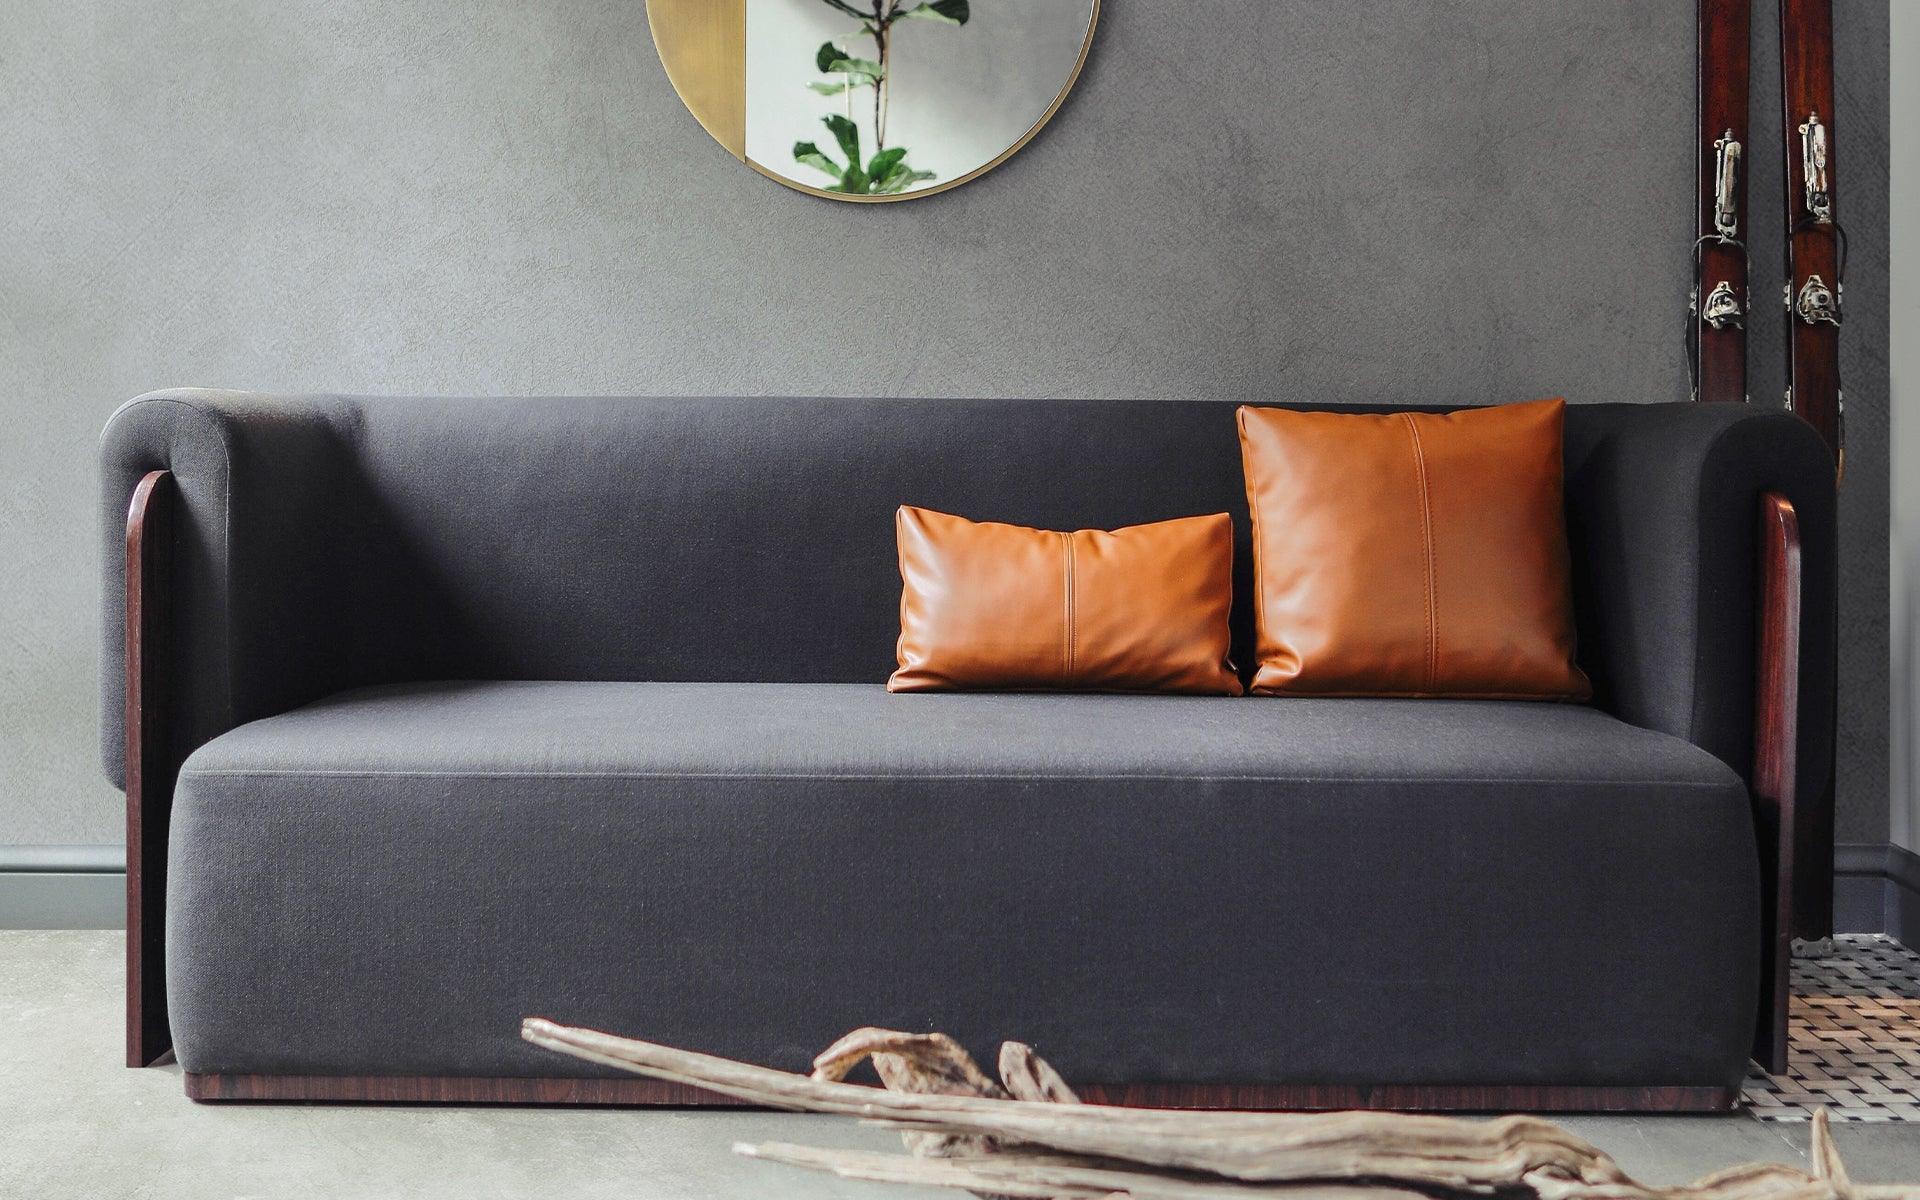 Le canapé 3 places Baika, élégamment habillé de bois de châtaignier foncé, devient la pièce la plus discrète et la plus remarquable de votre intérieur. Ce canapé unique capte l'attention par son design distinctif.

Avec ses coussins d'assise